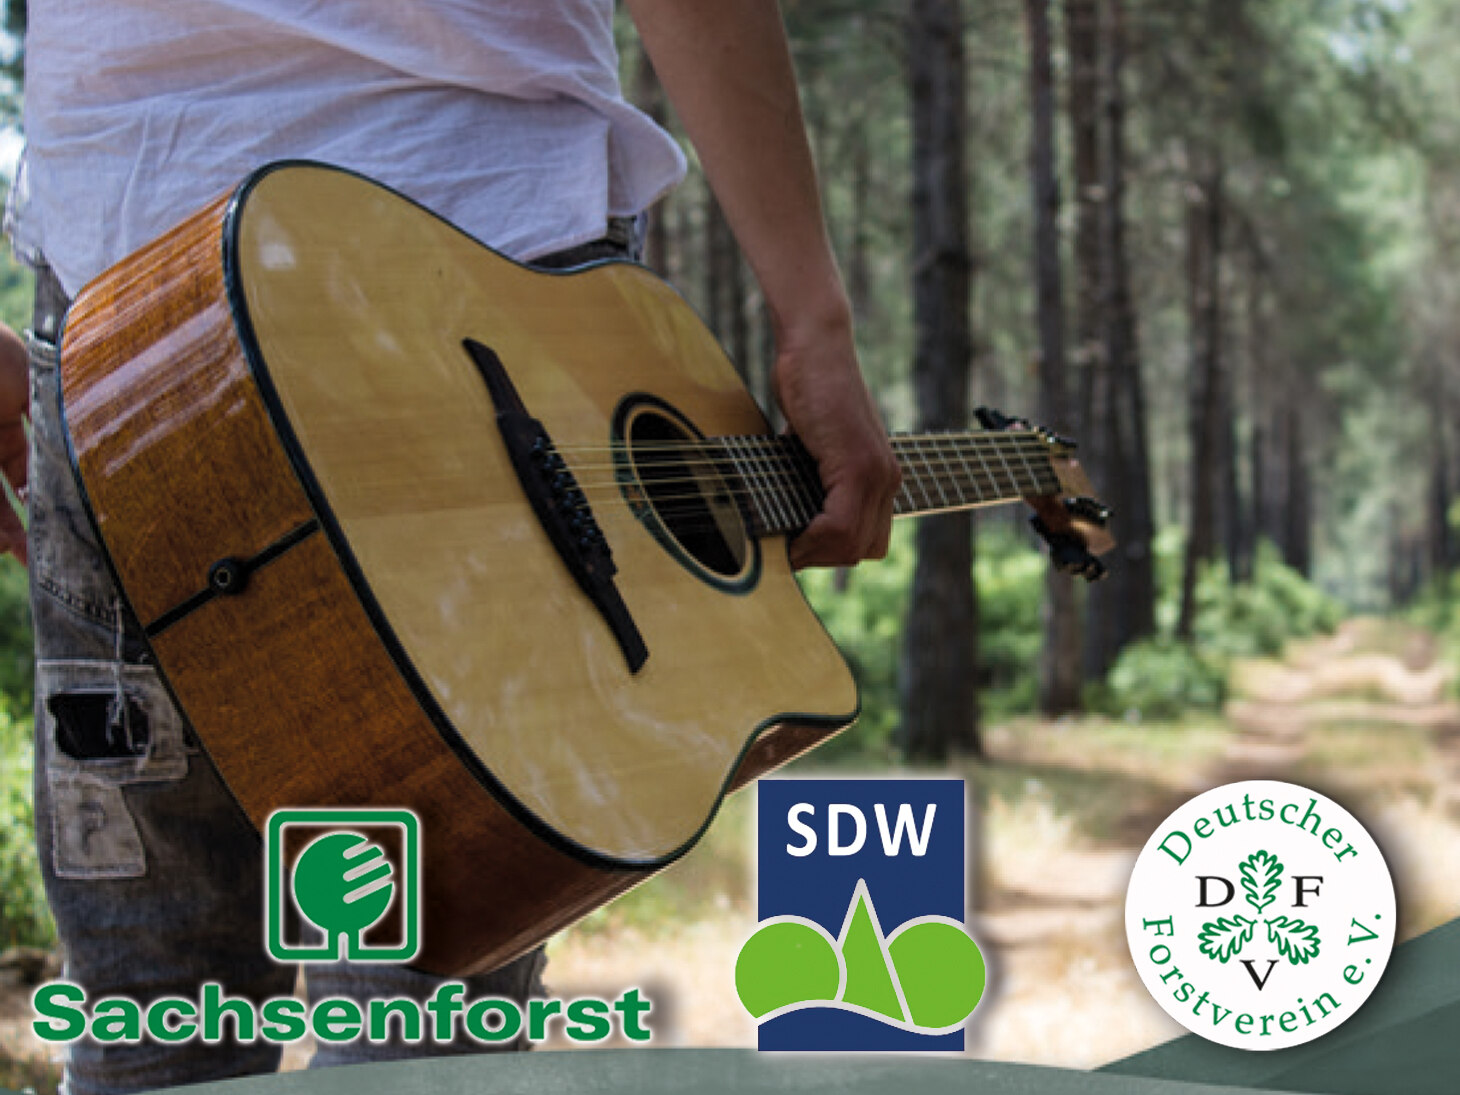 Mann steht mit Gitarre auf einem Waldweg. Davor die Logos von Sachsenforst, SDW und DFV.